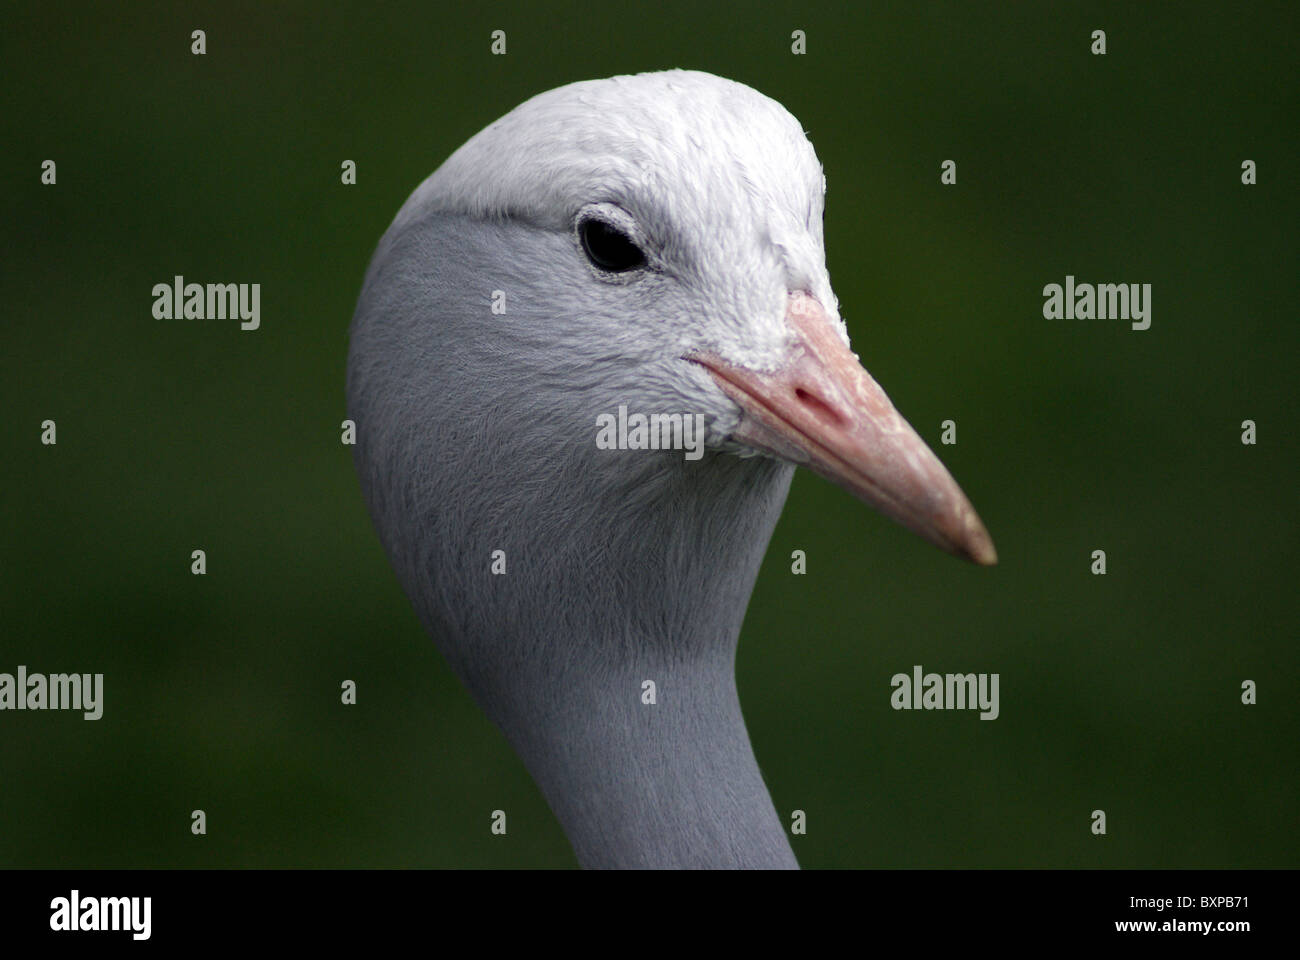 Testa di un uccello, close up Foto Stock